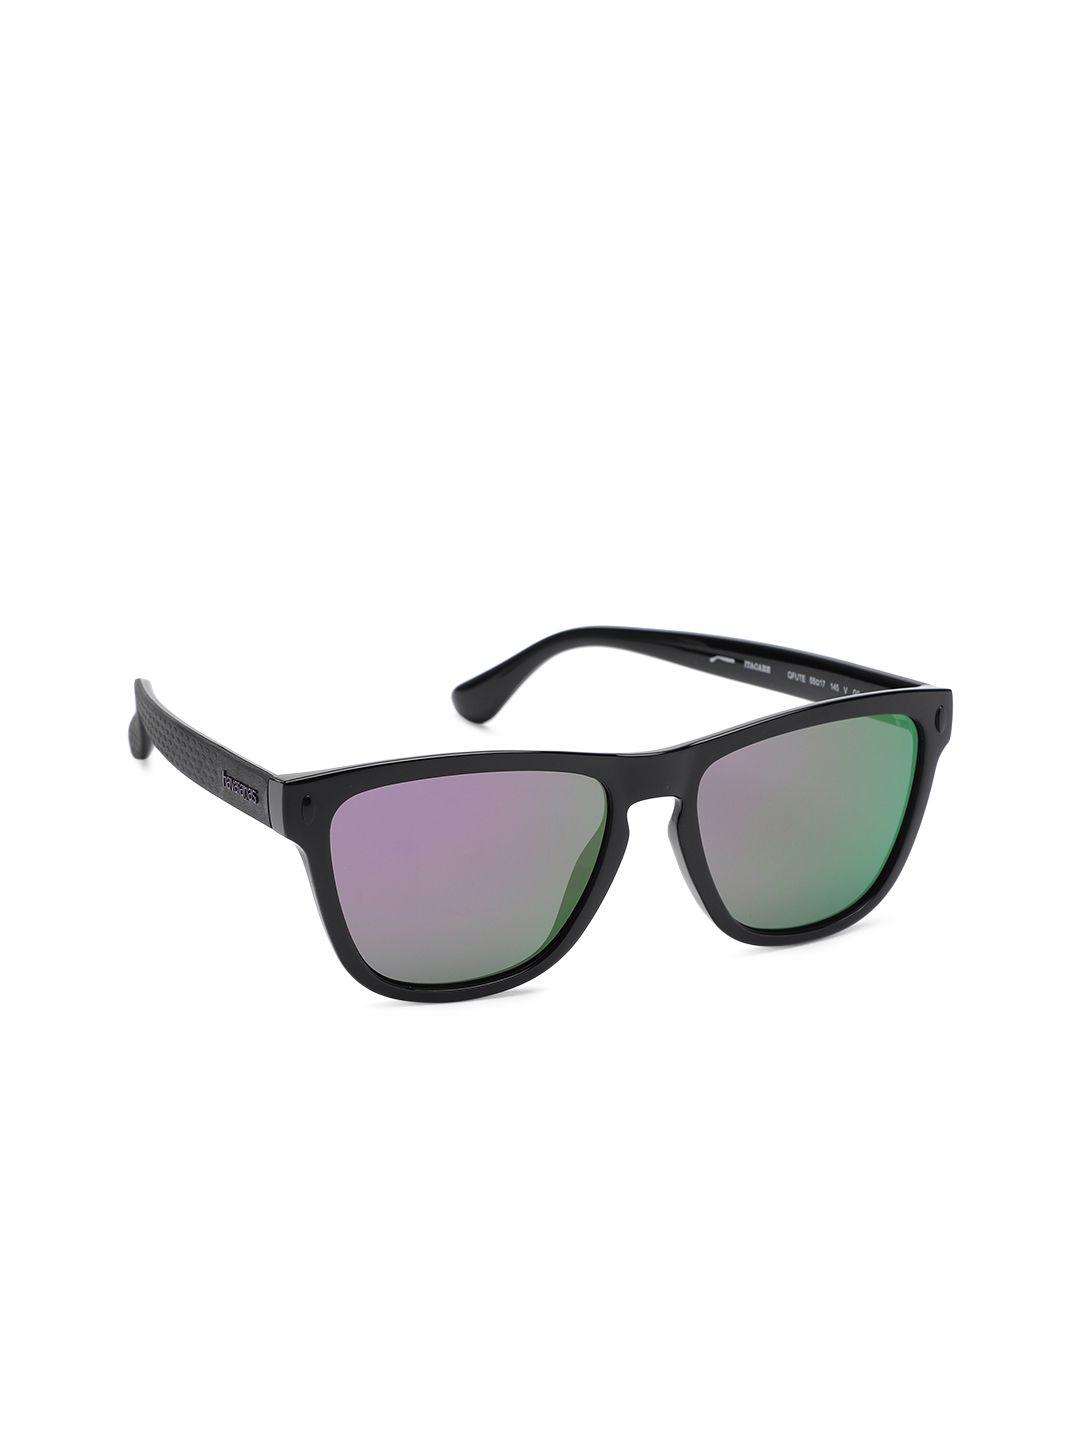 havaianas unisex itacare square sunglasses qfu 55te